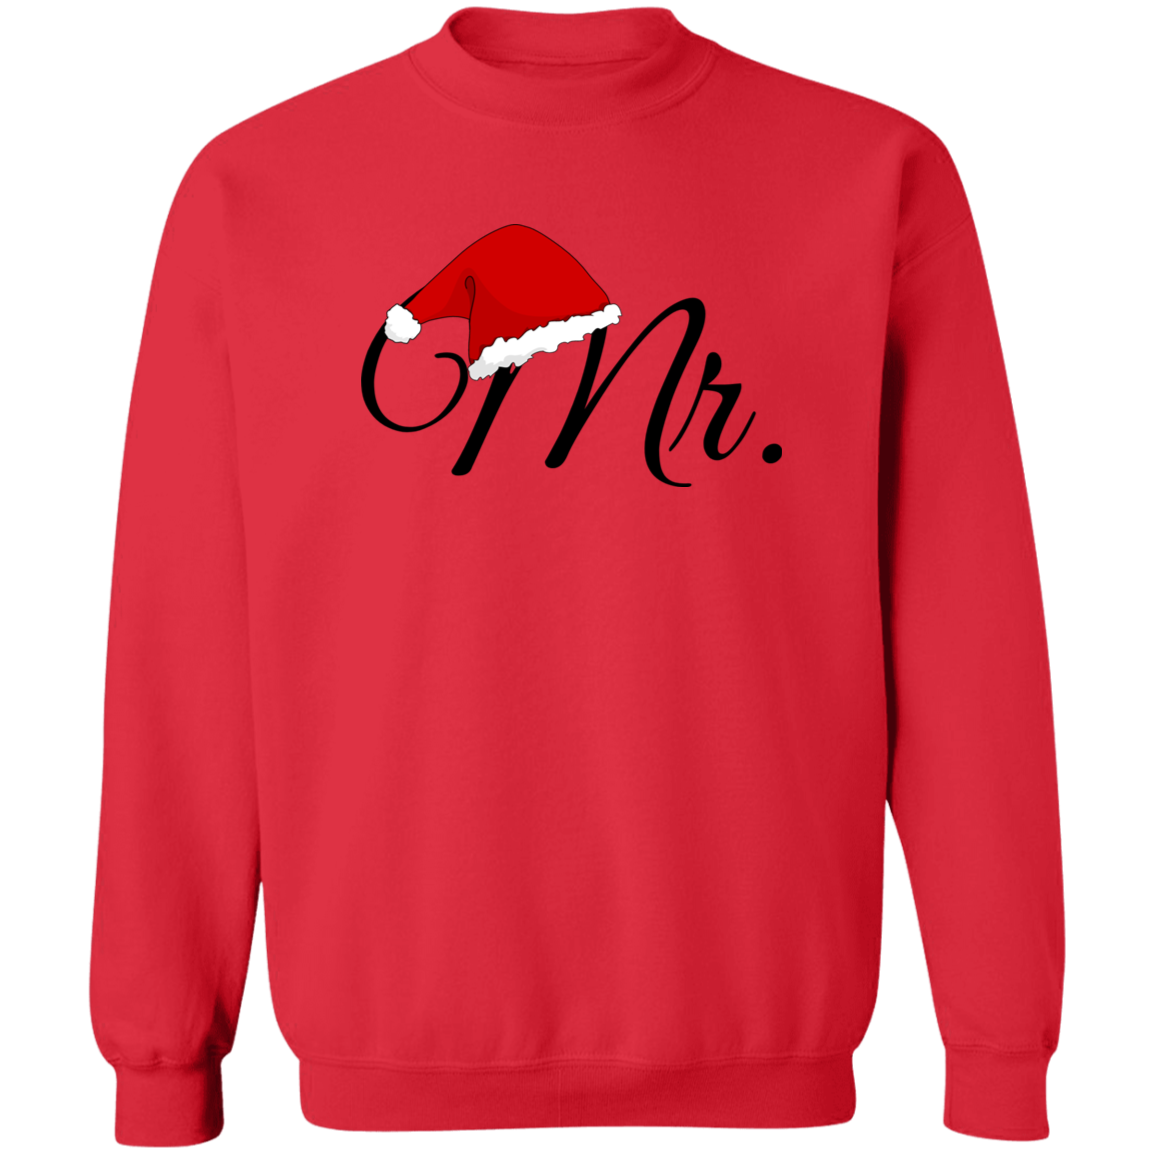 Mr. Christmas Sweatshirt